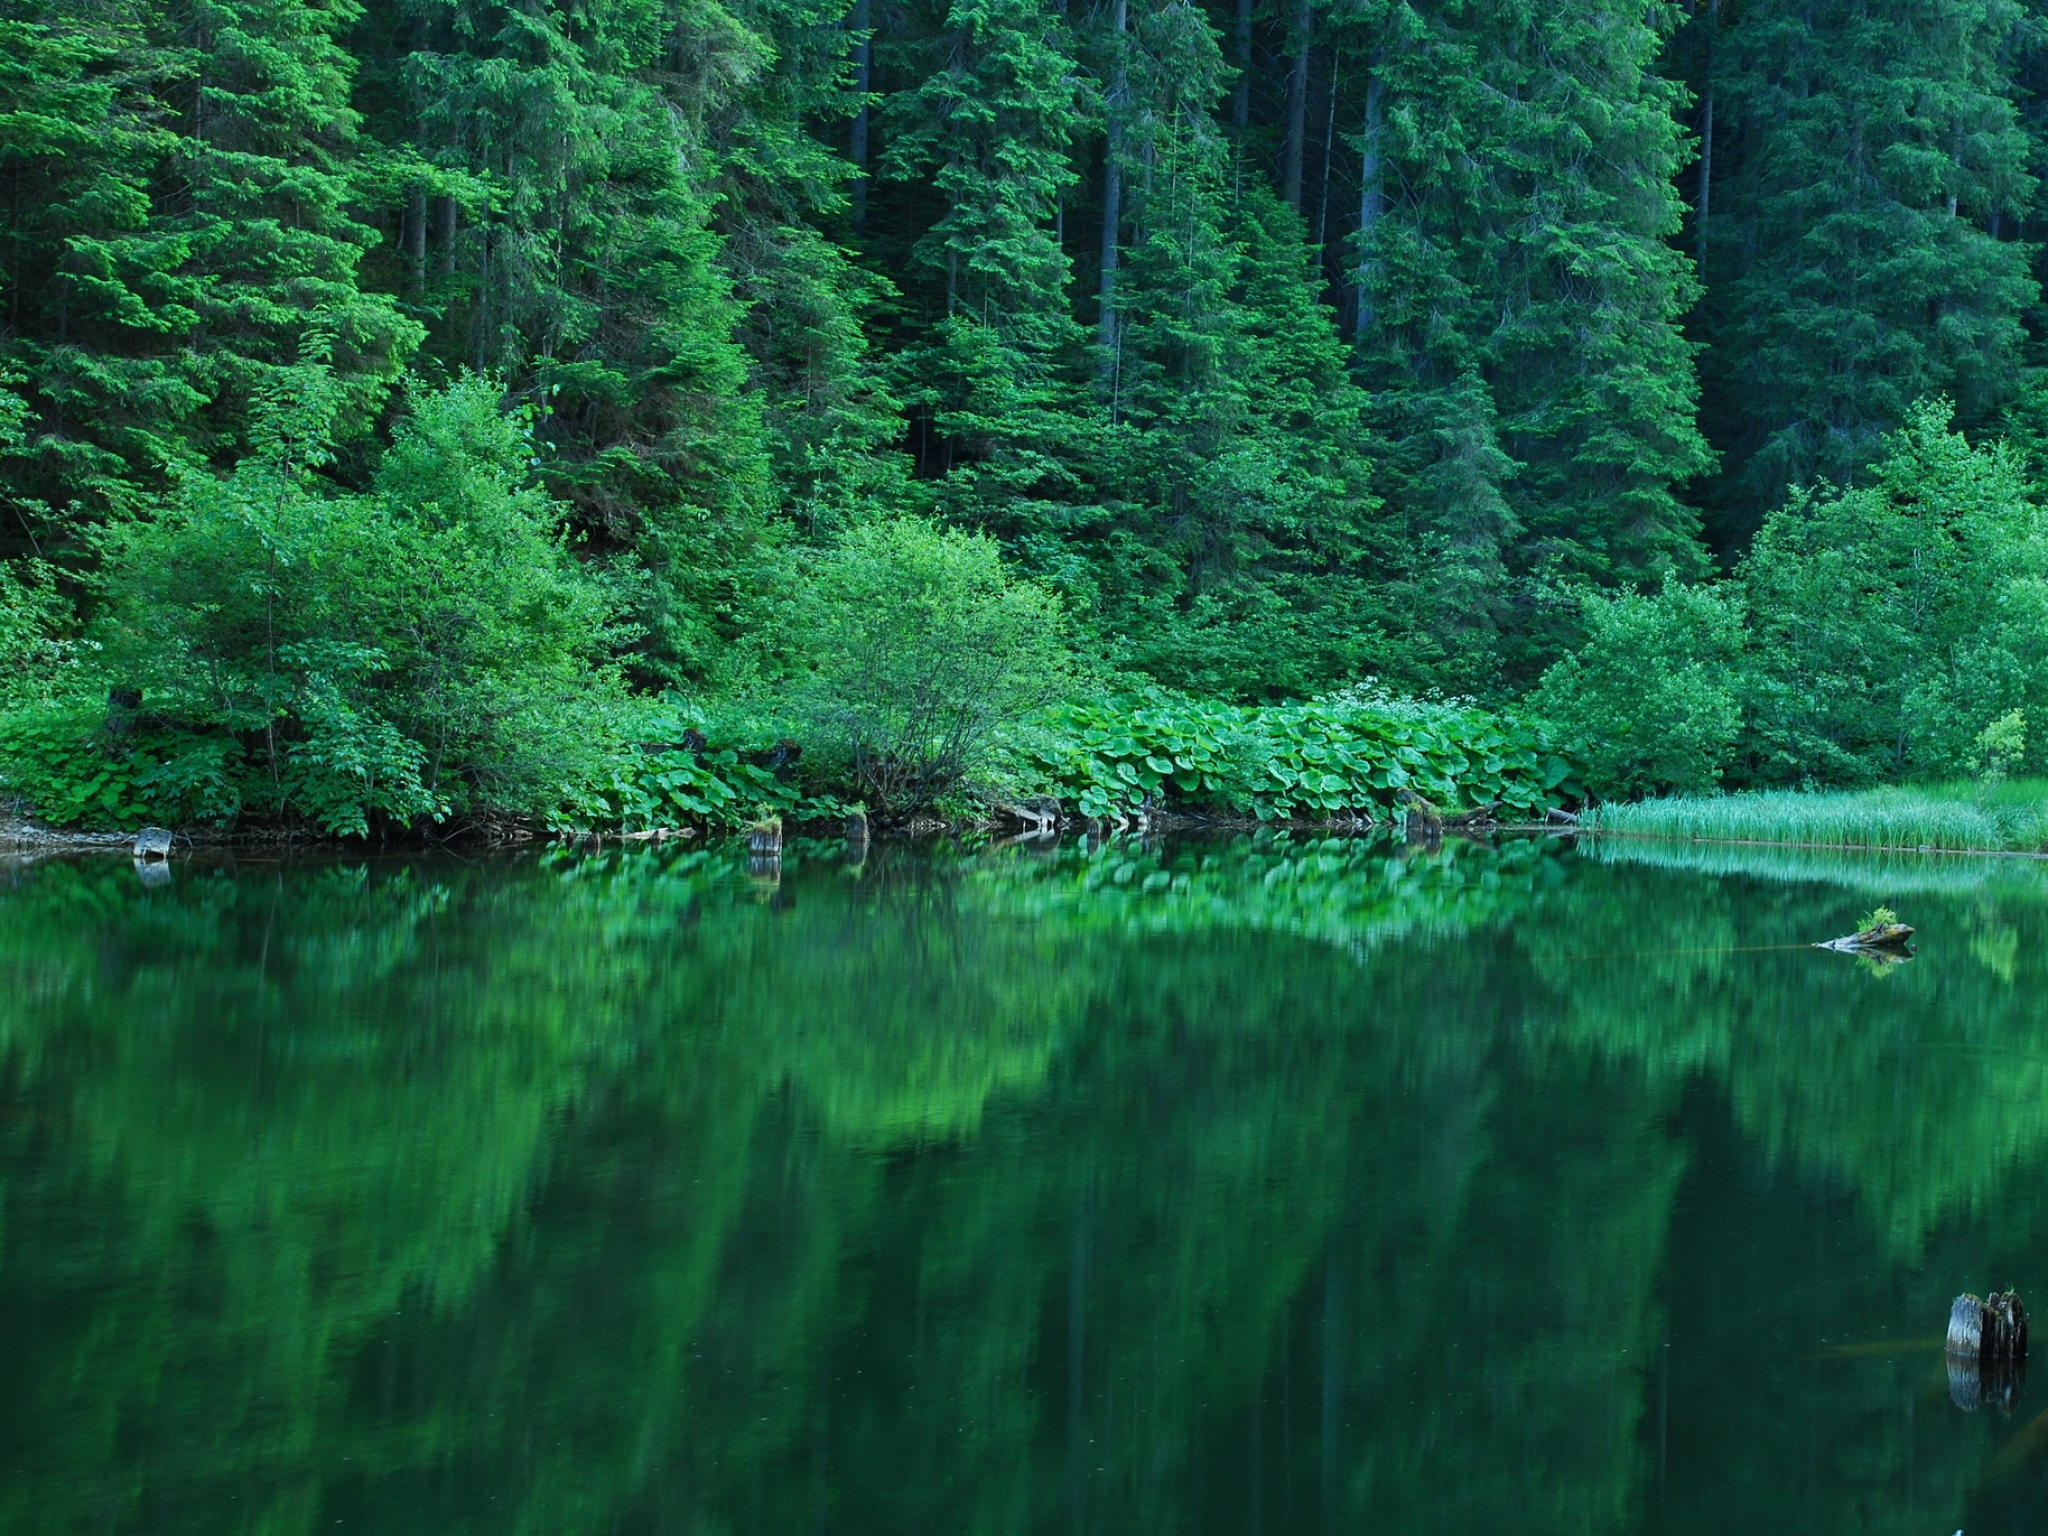 Установить на экране природу. Изумрудное озеро зеленолес. Озеро Рица. Лесное озеро Залмана Кинга. Изумрудно-зеленые водоемы, Твизель, новая Зеландия.